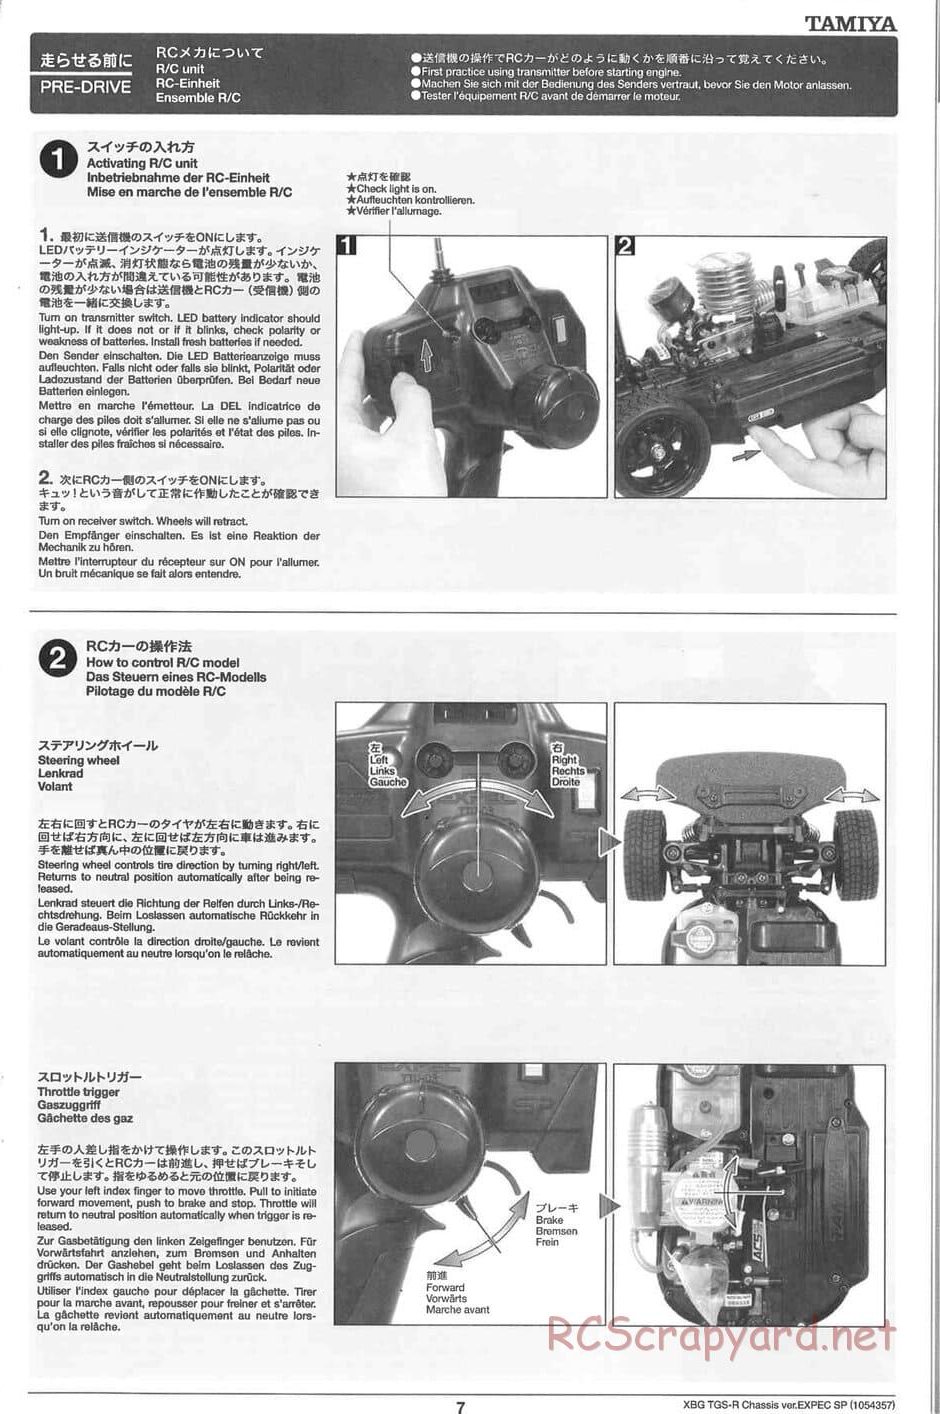 Tamiya - TGS-R Chassis - Manual - Page 7